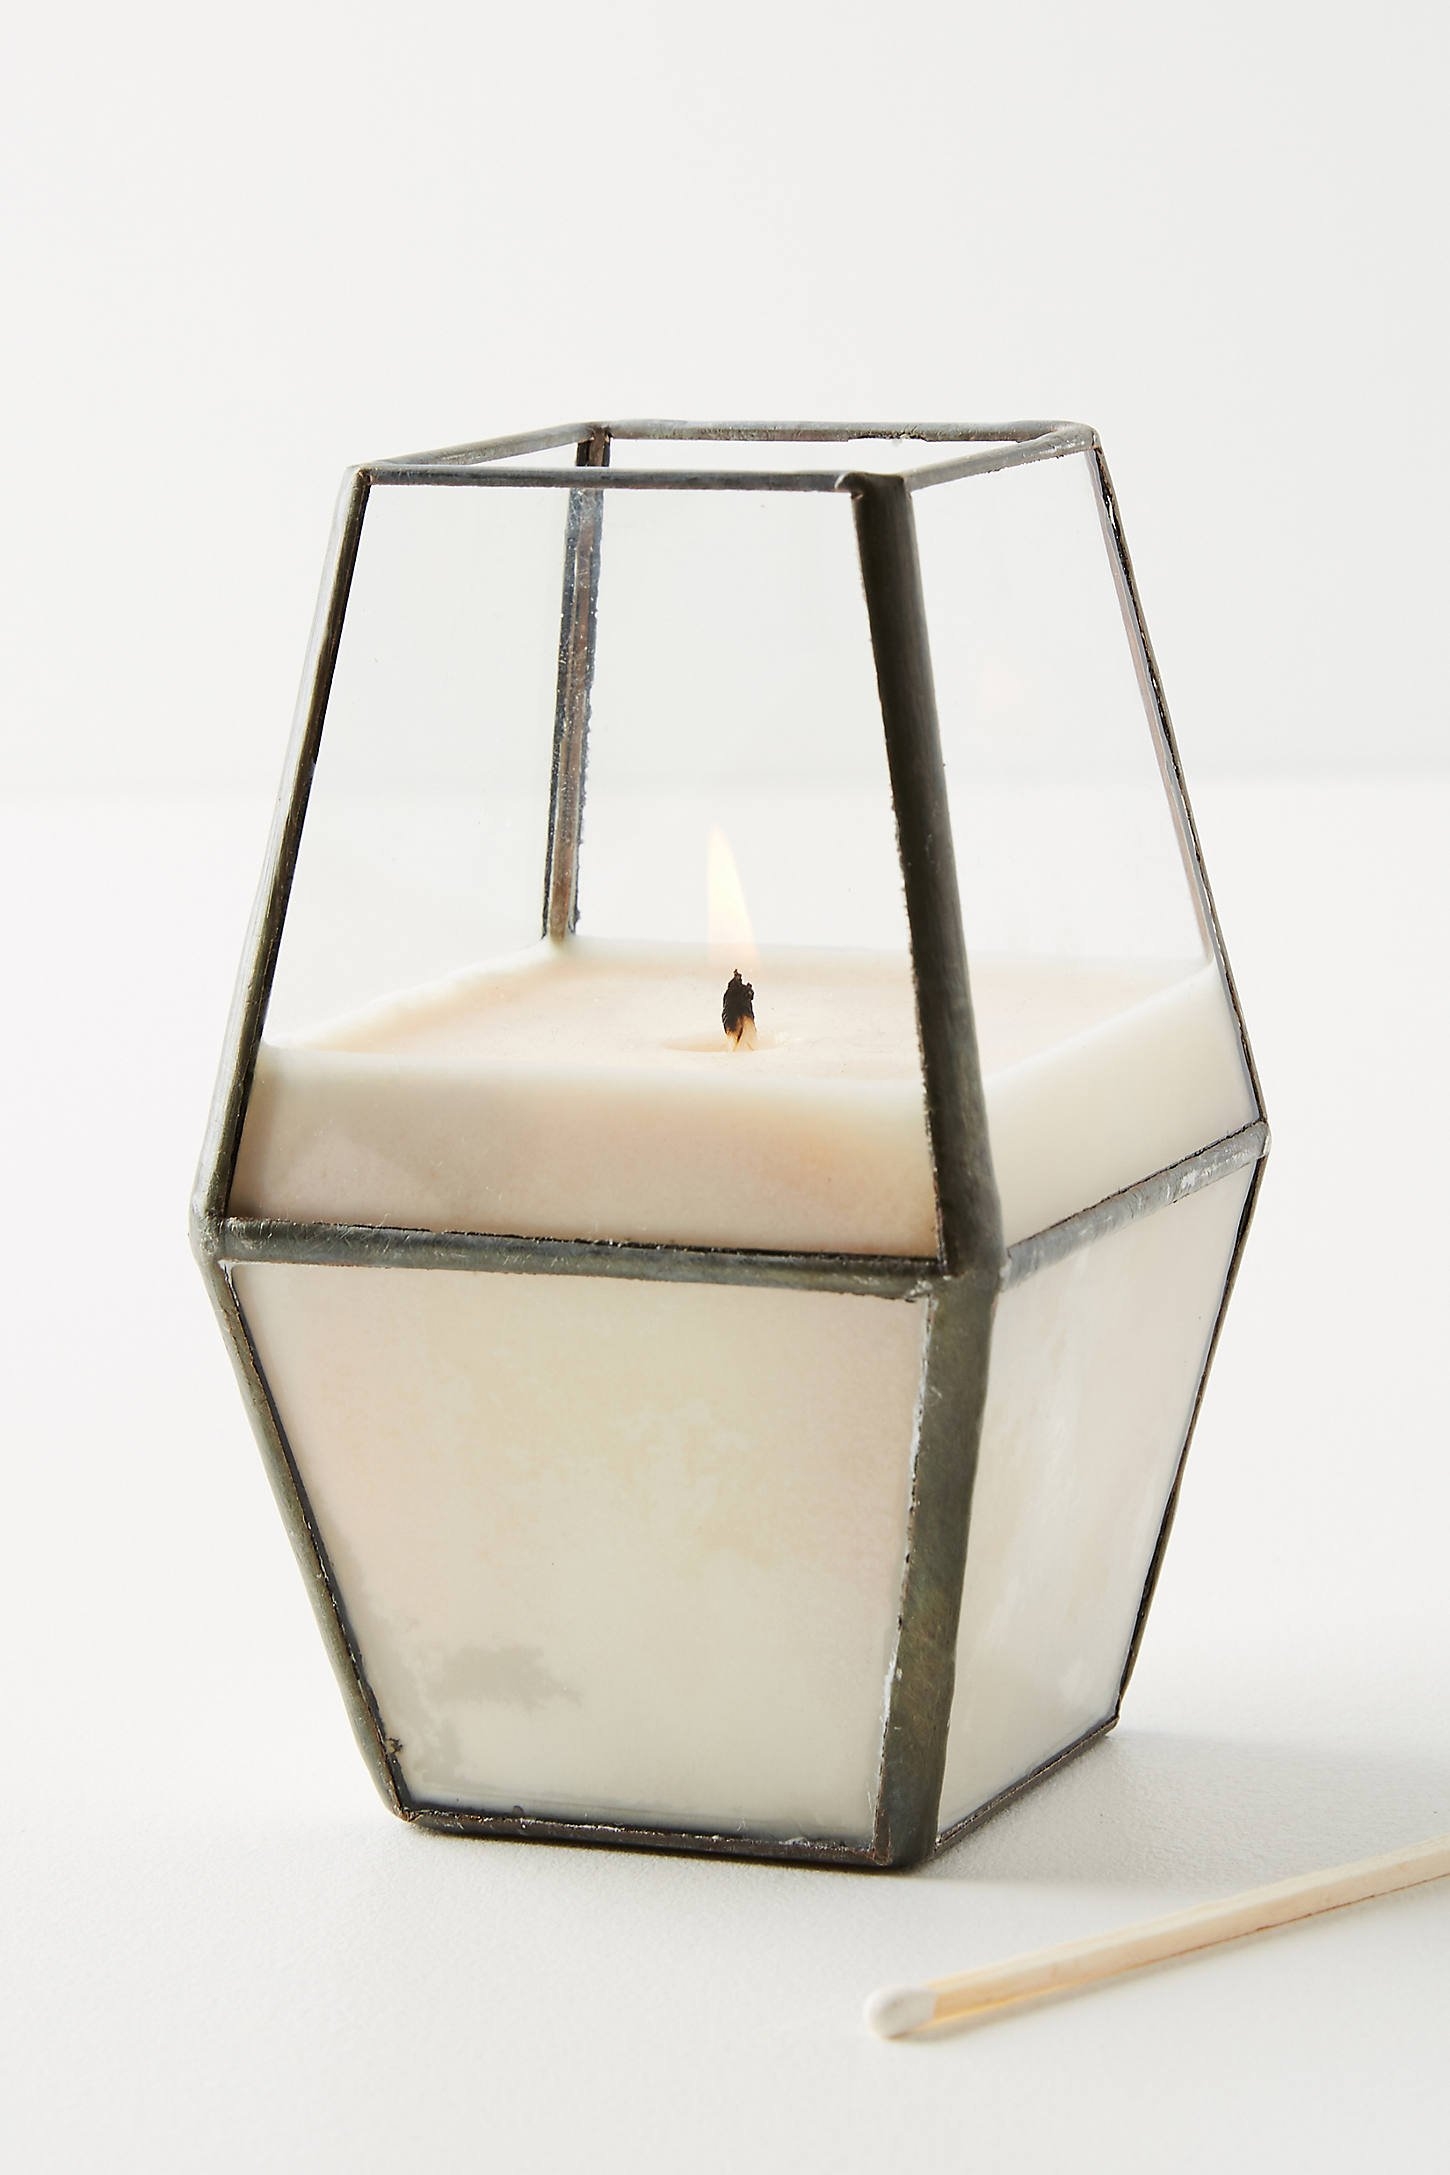 Macbailey Candle Co. Lantern Candle - Image 0